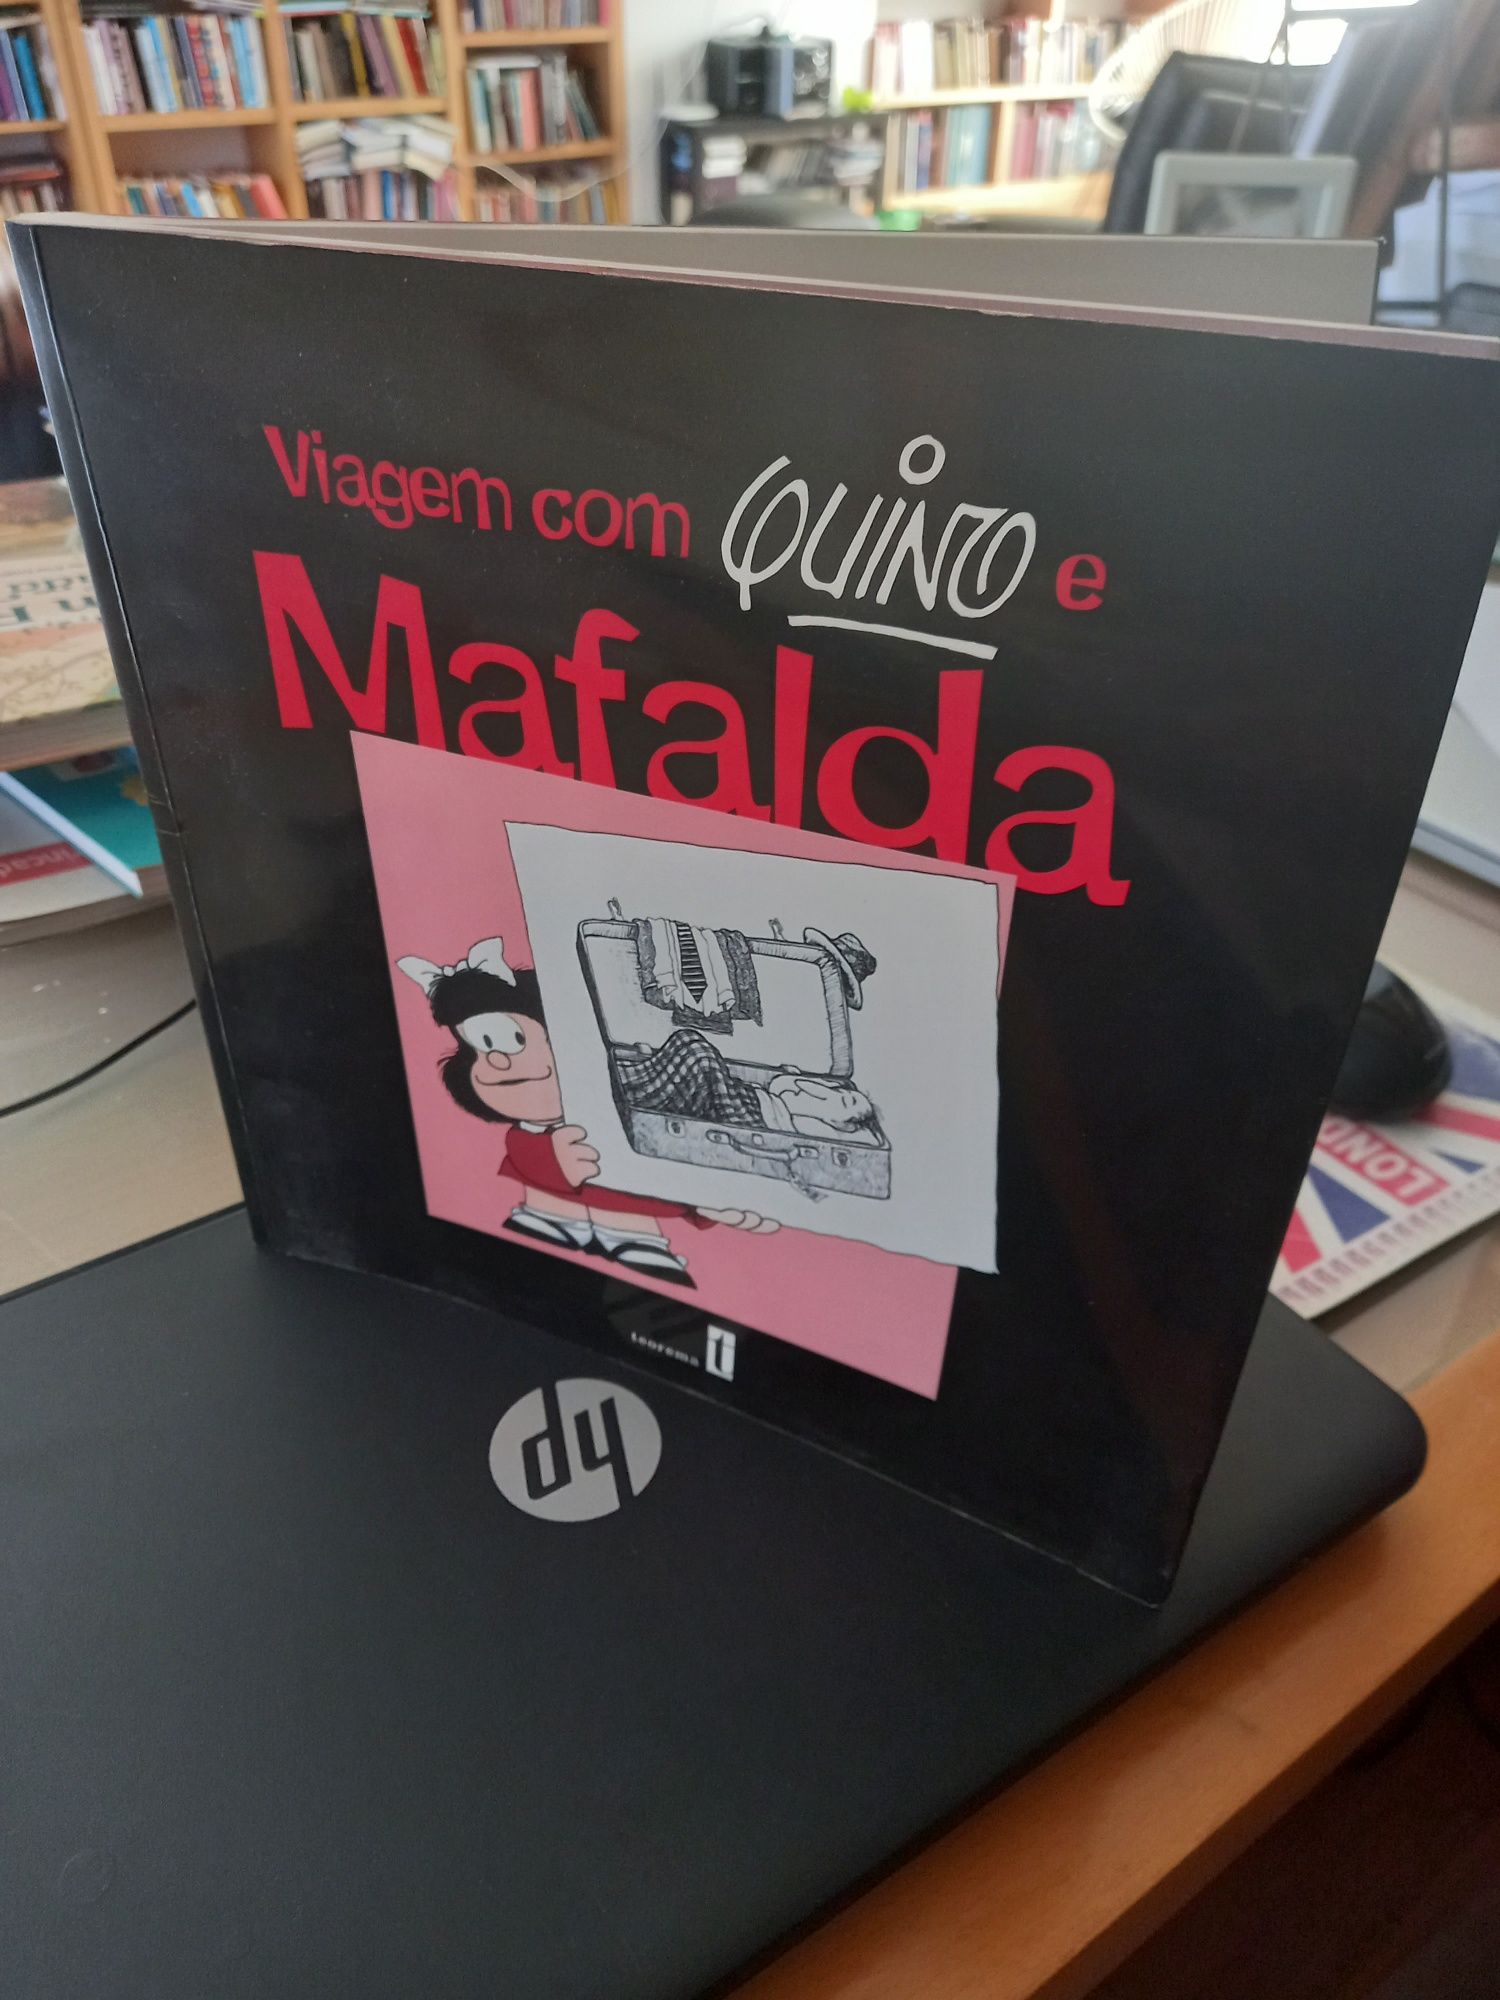 Viagem com Quino e Mafalda